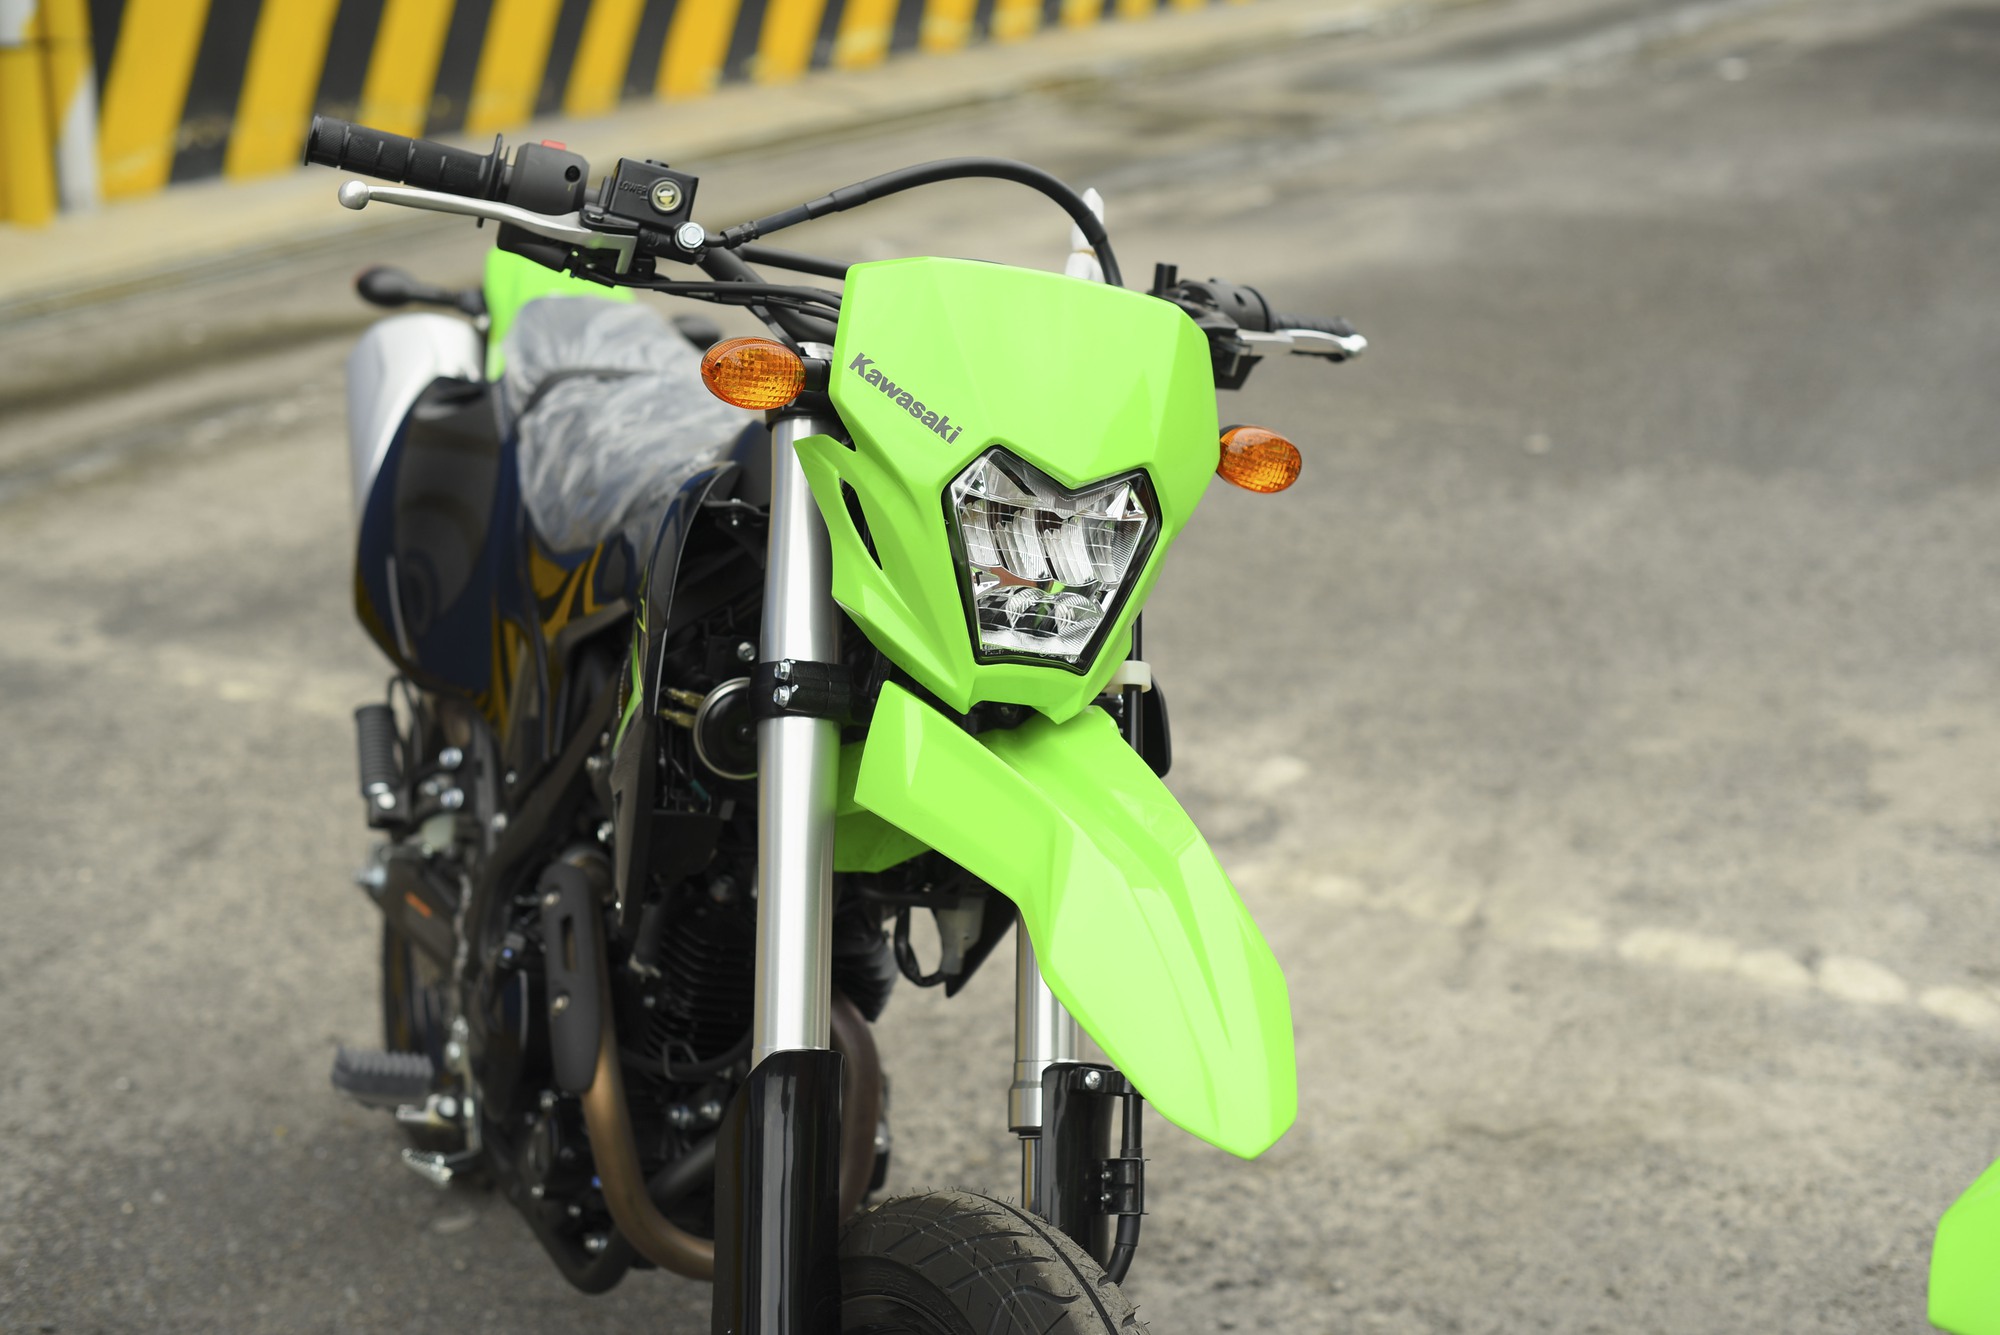 Ra mắt Kawasaki KLX230 tại Việt Nam, giá 151 triệu đồng - Ảnh 9.